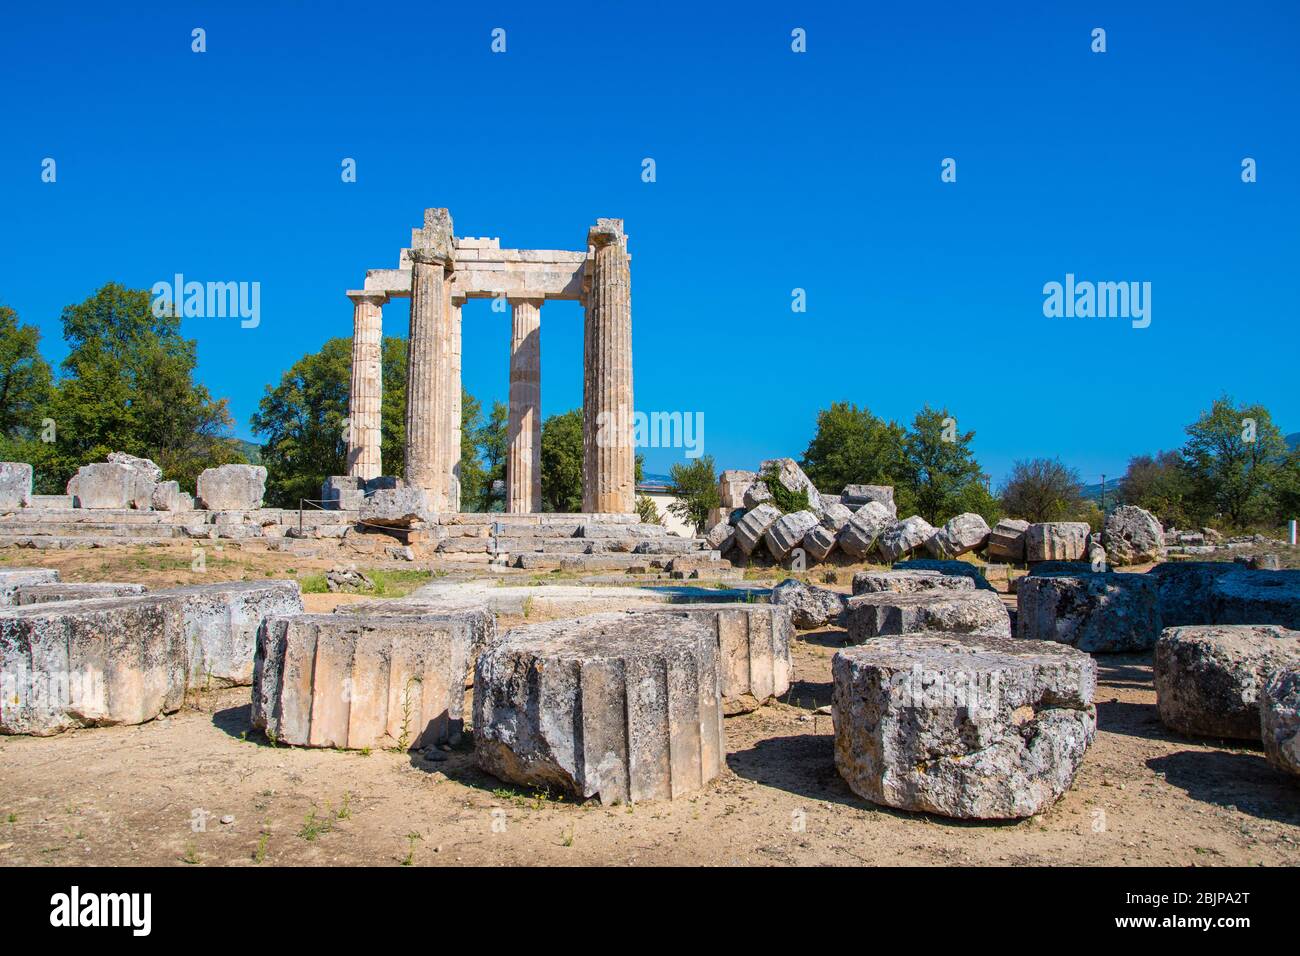 Tempio di Zeus nel sito archeologico di Nemea in Grecia. Ha tre stili architettonici: dorico, ionico e corinzio Foto Stock